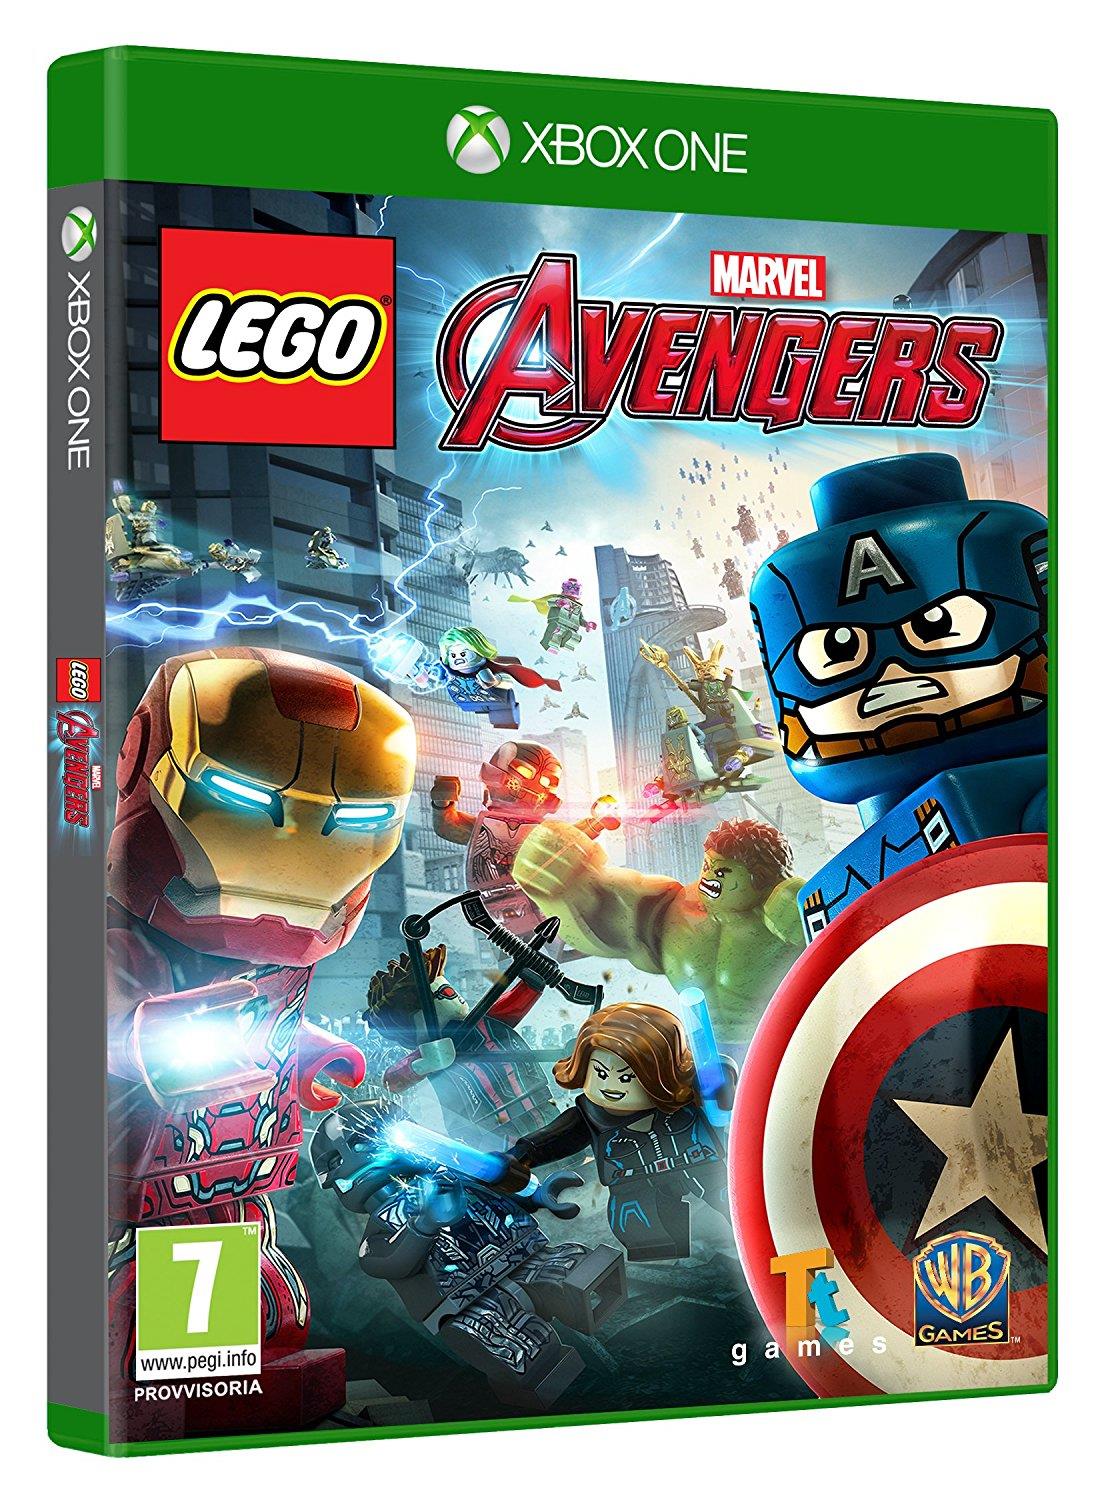 LEGO Marvels Avengers Xbox